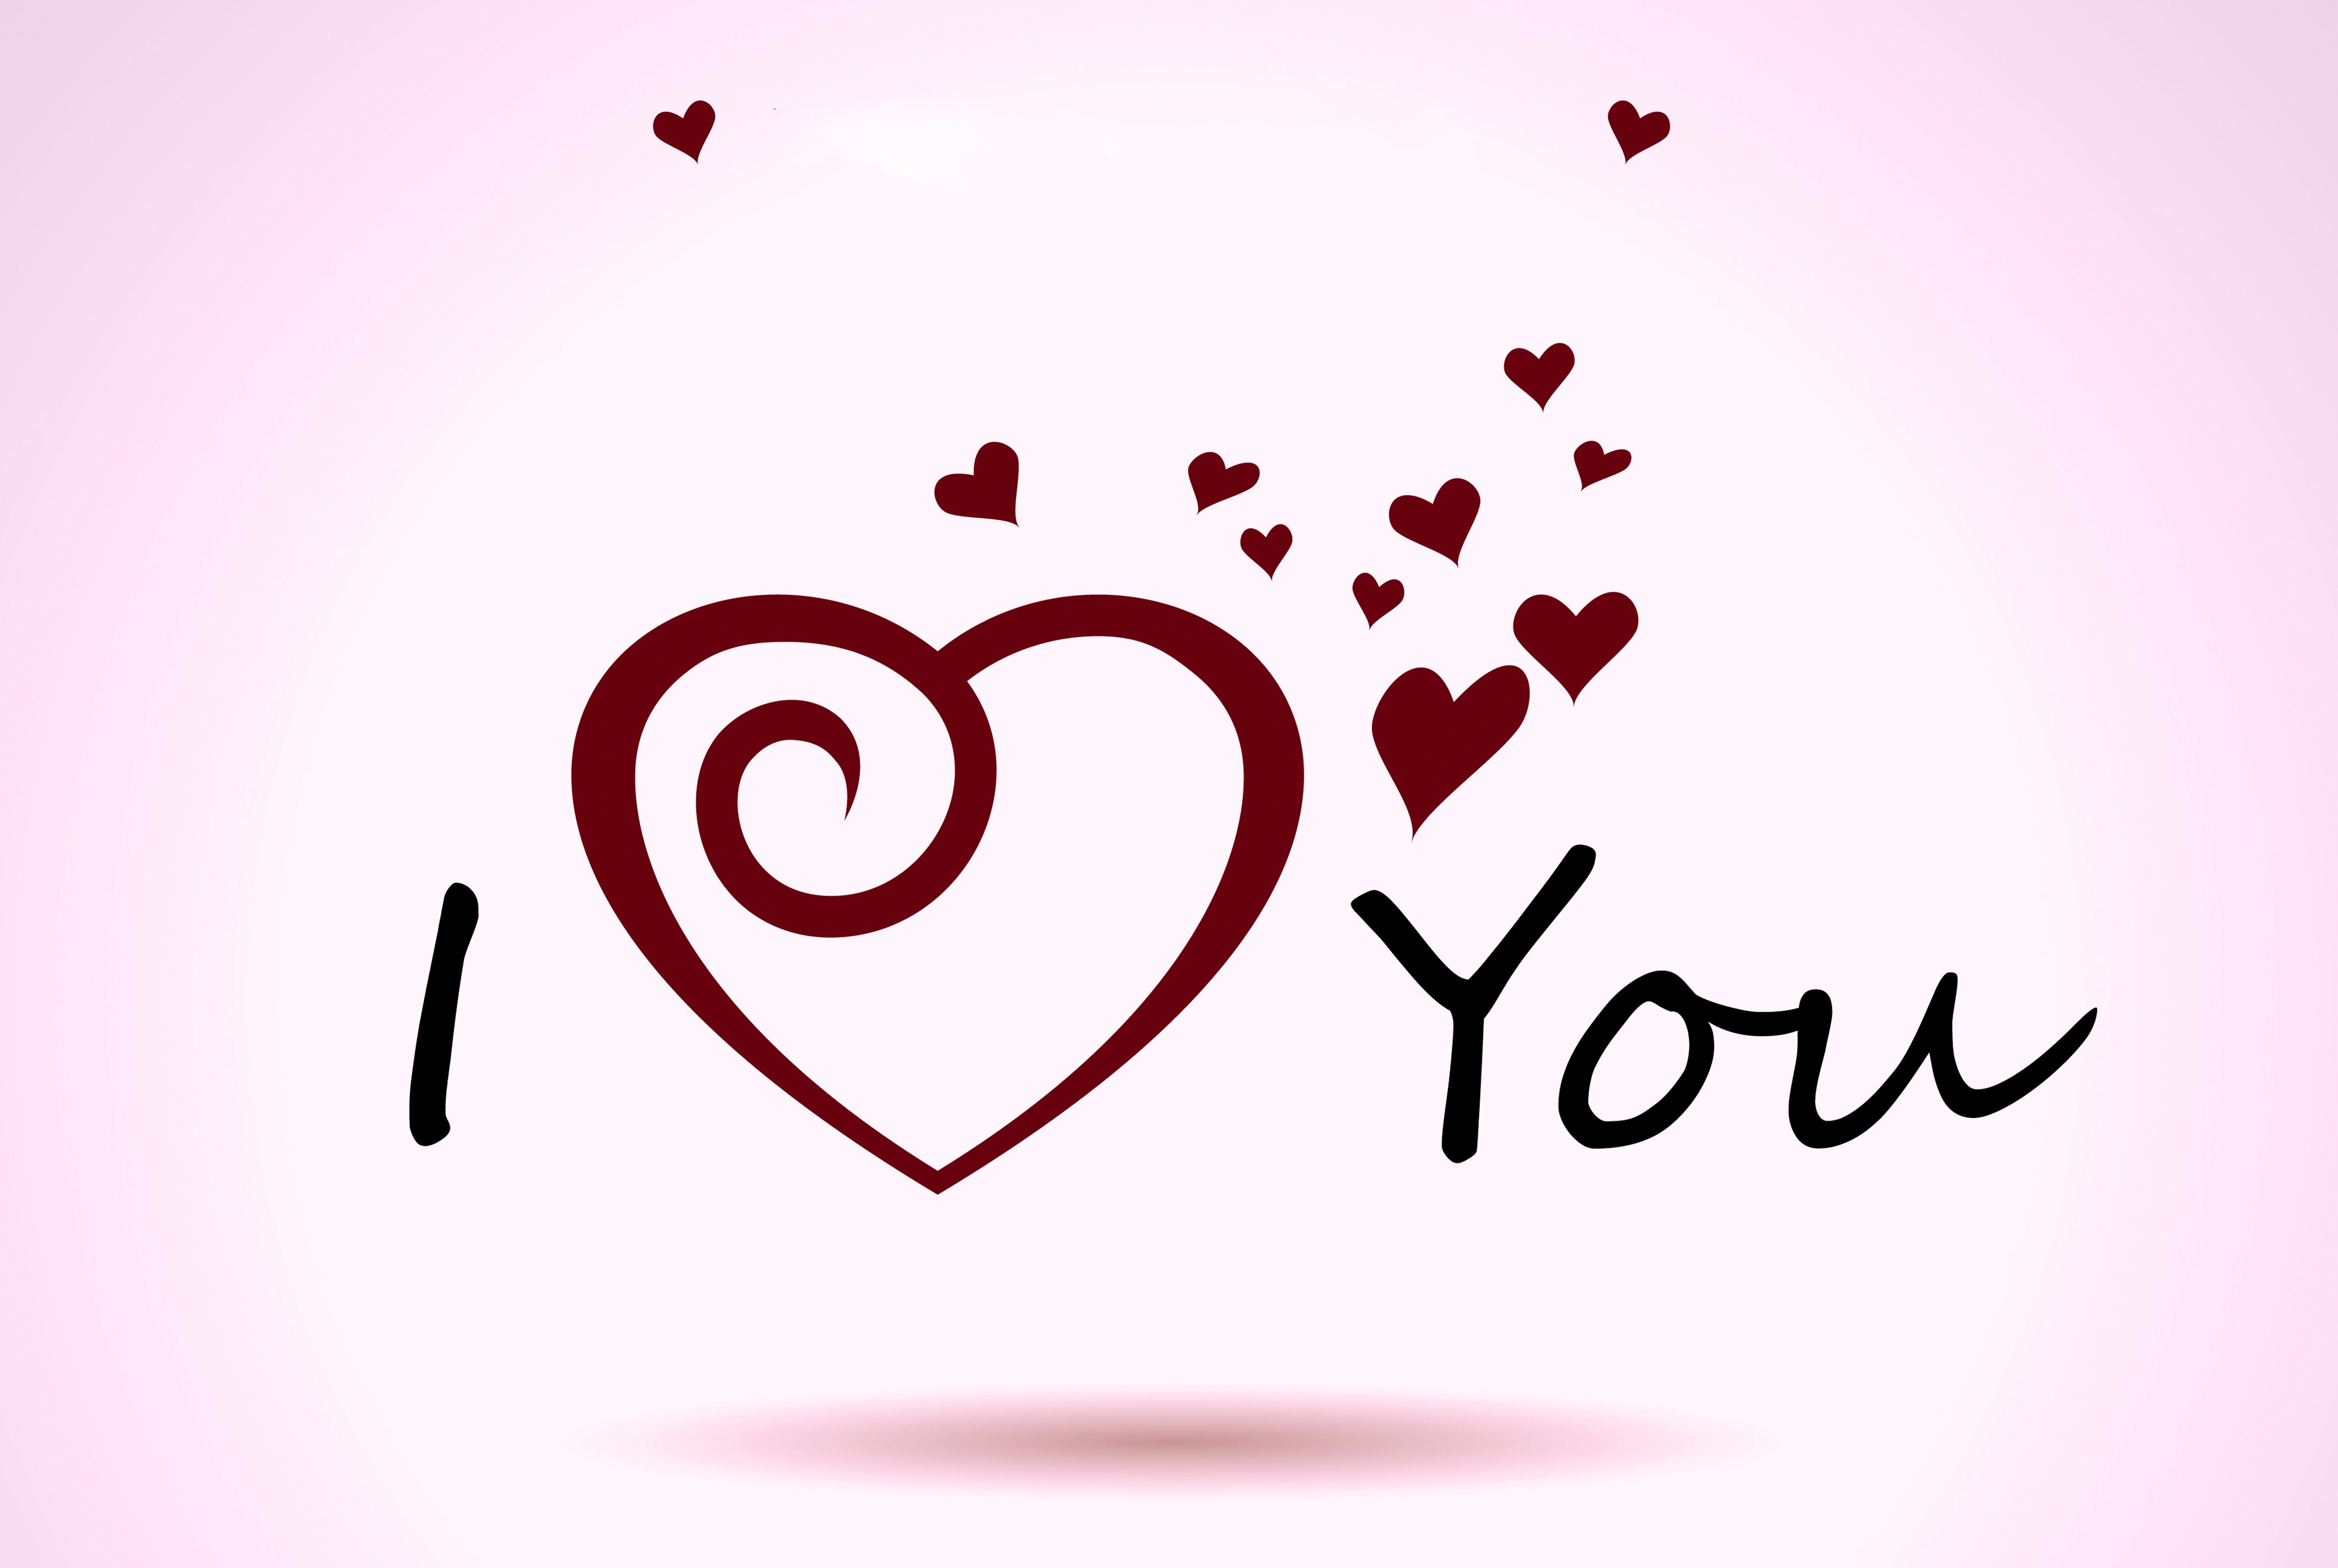 Hình Ảnh I Love You Đẹp - Anh Yêu Em Ý Nghĩa Dùng Tỏ Tình | Vfo.Vn